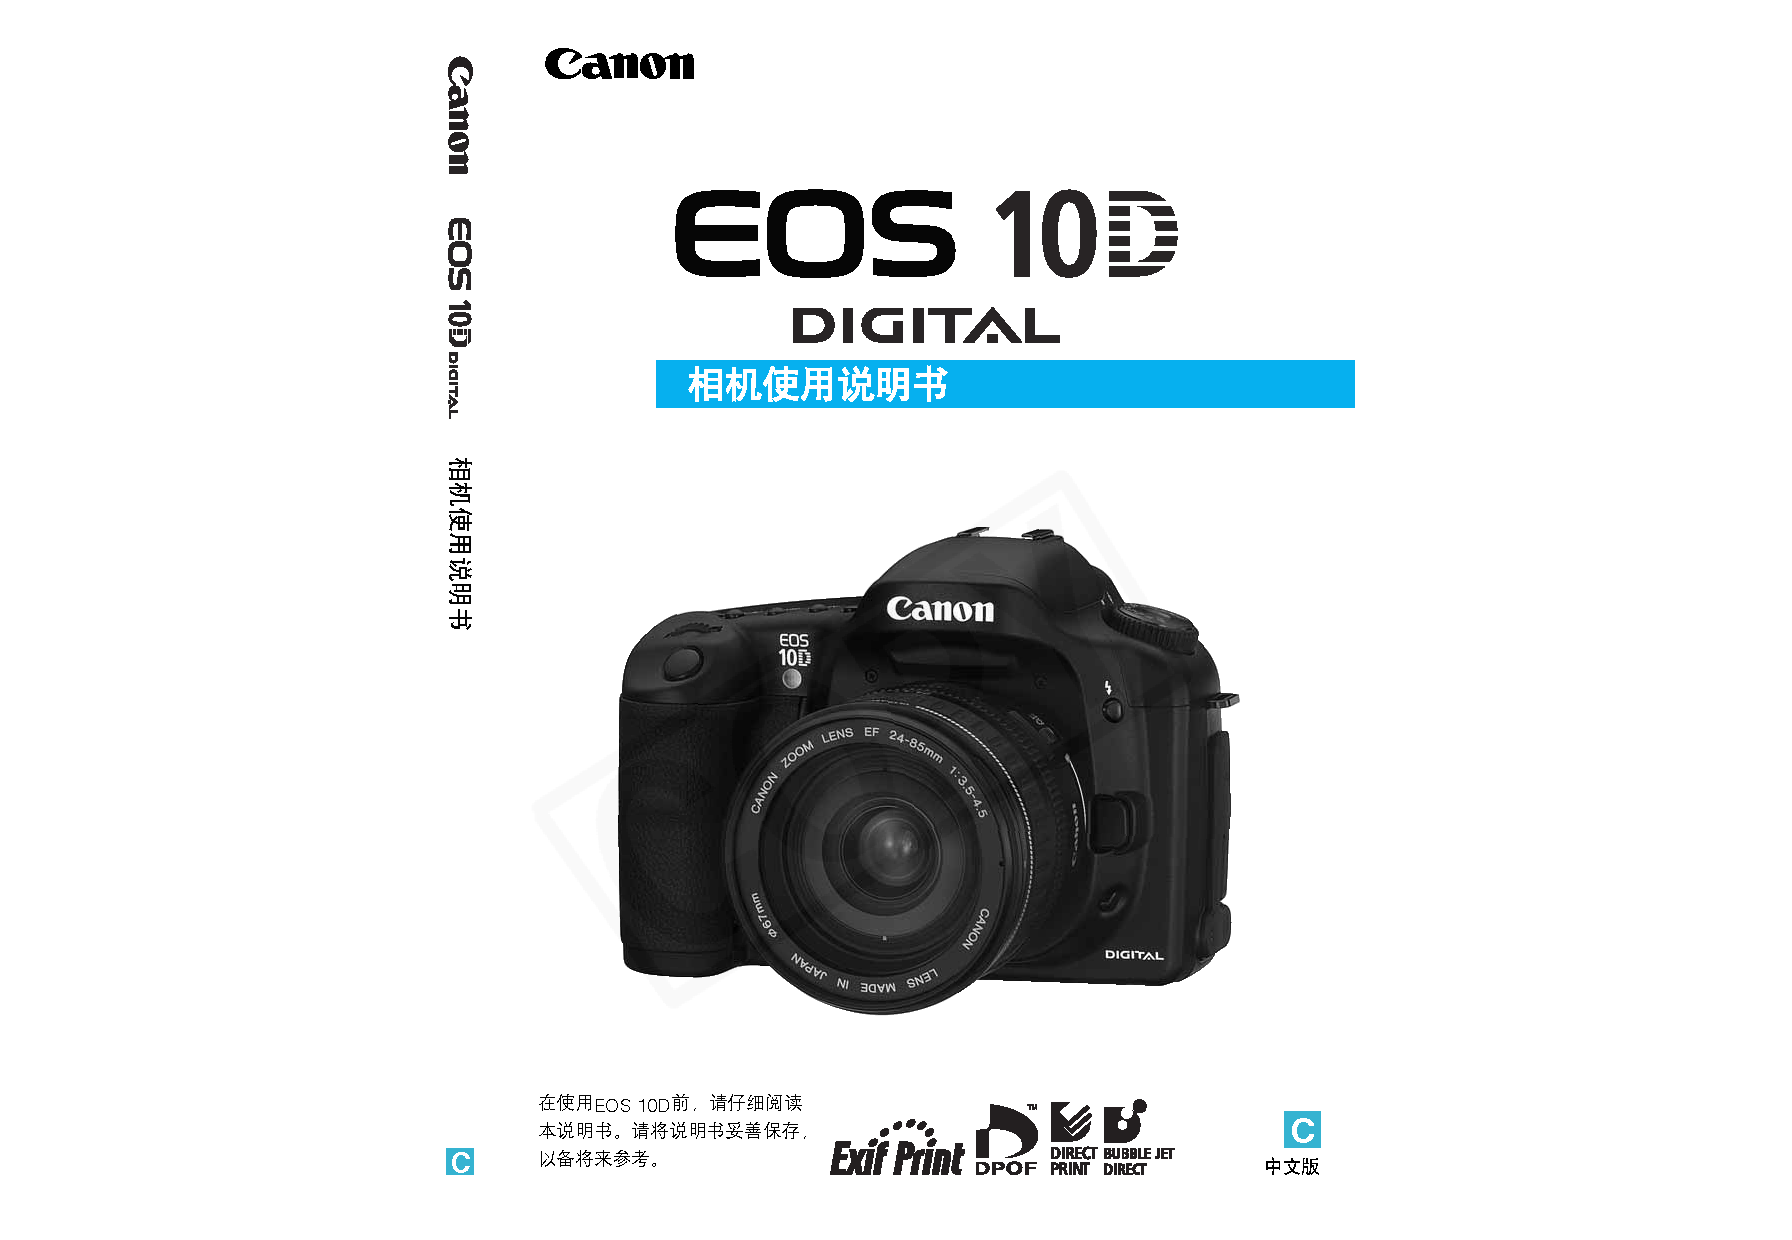 佳能 Canon EOS 10D 用户指南 封面